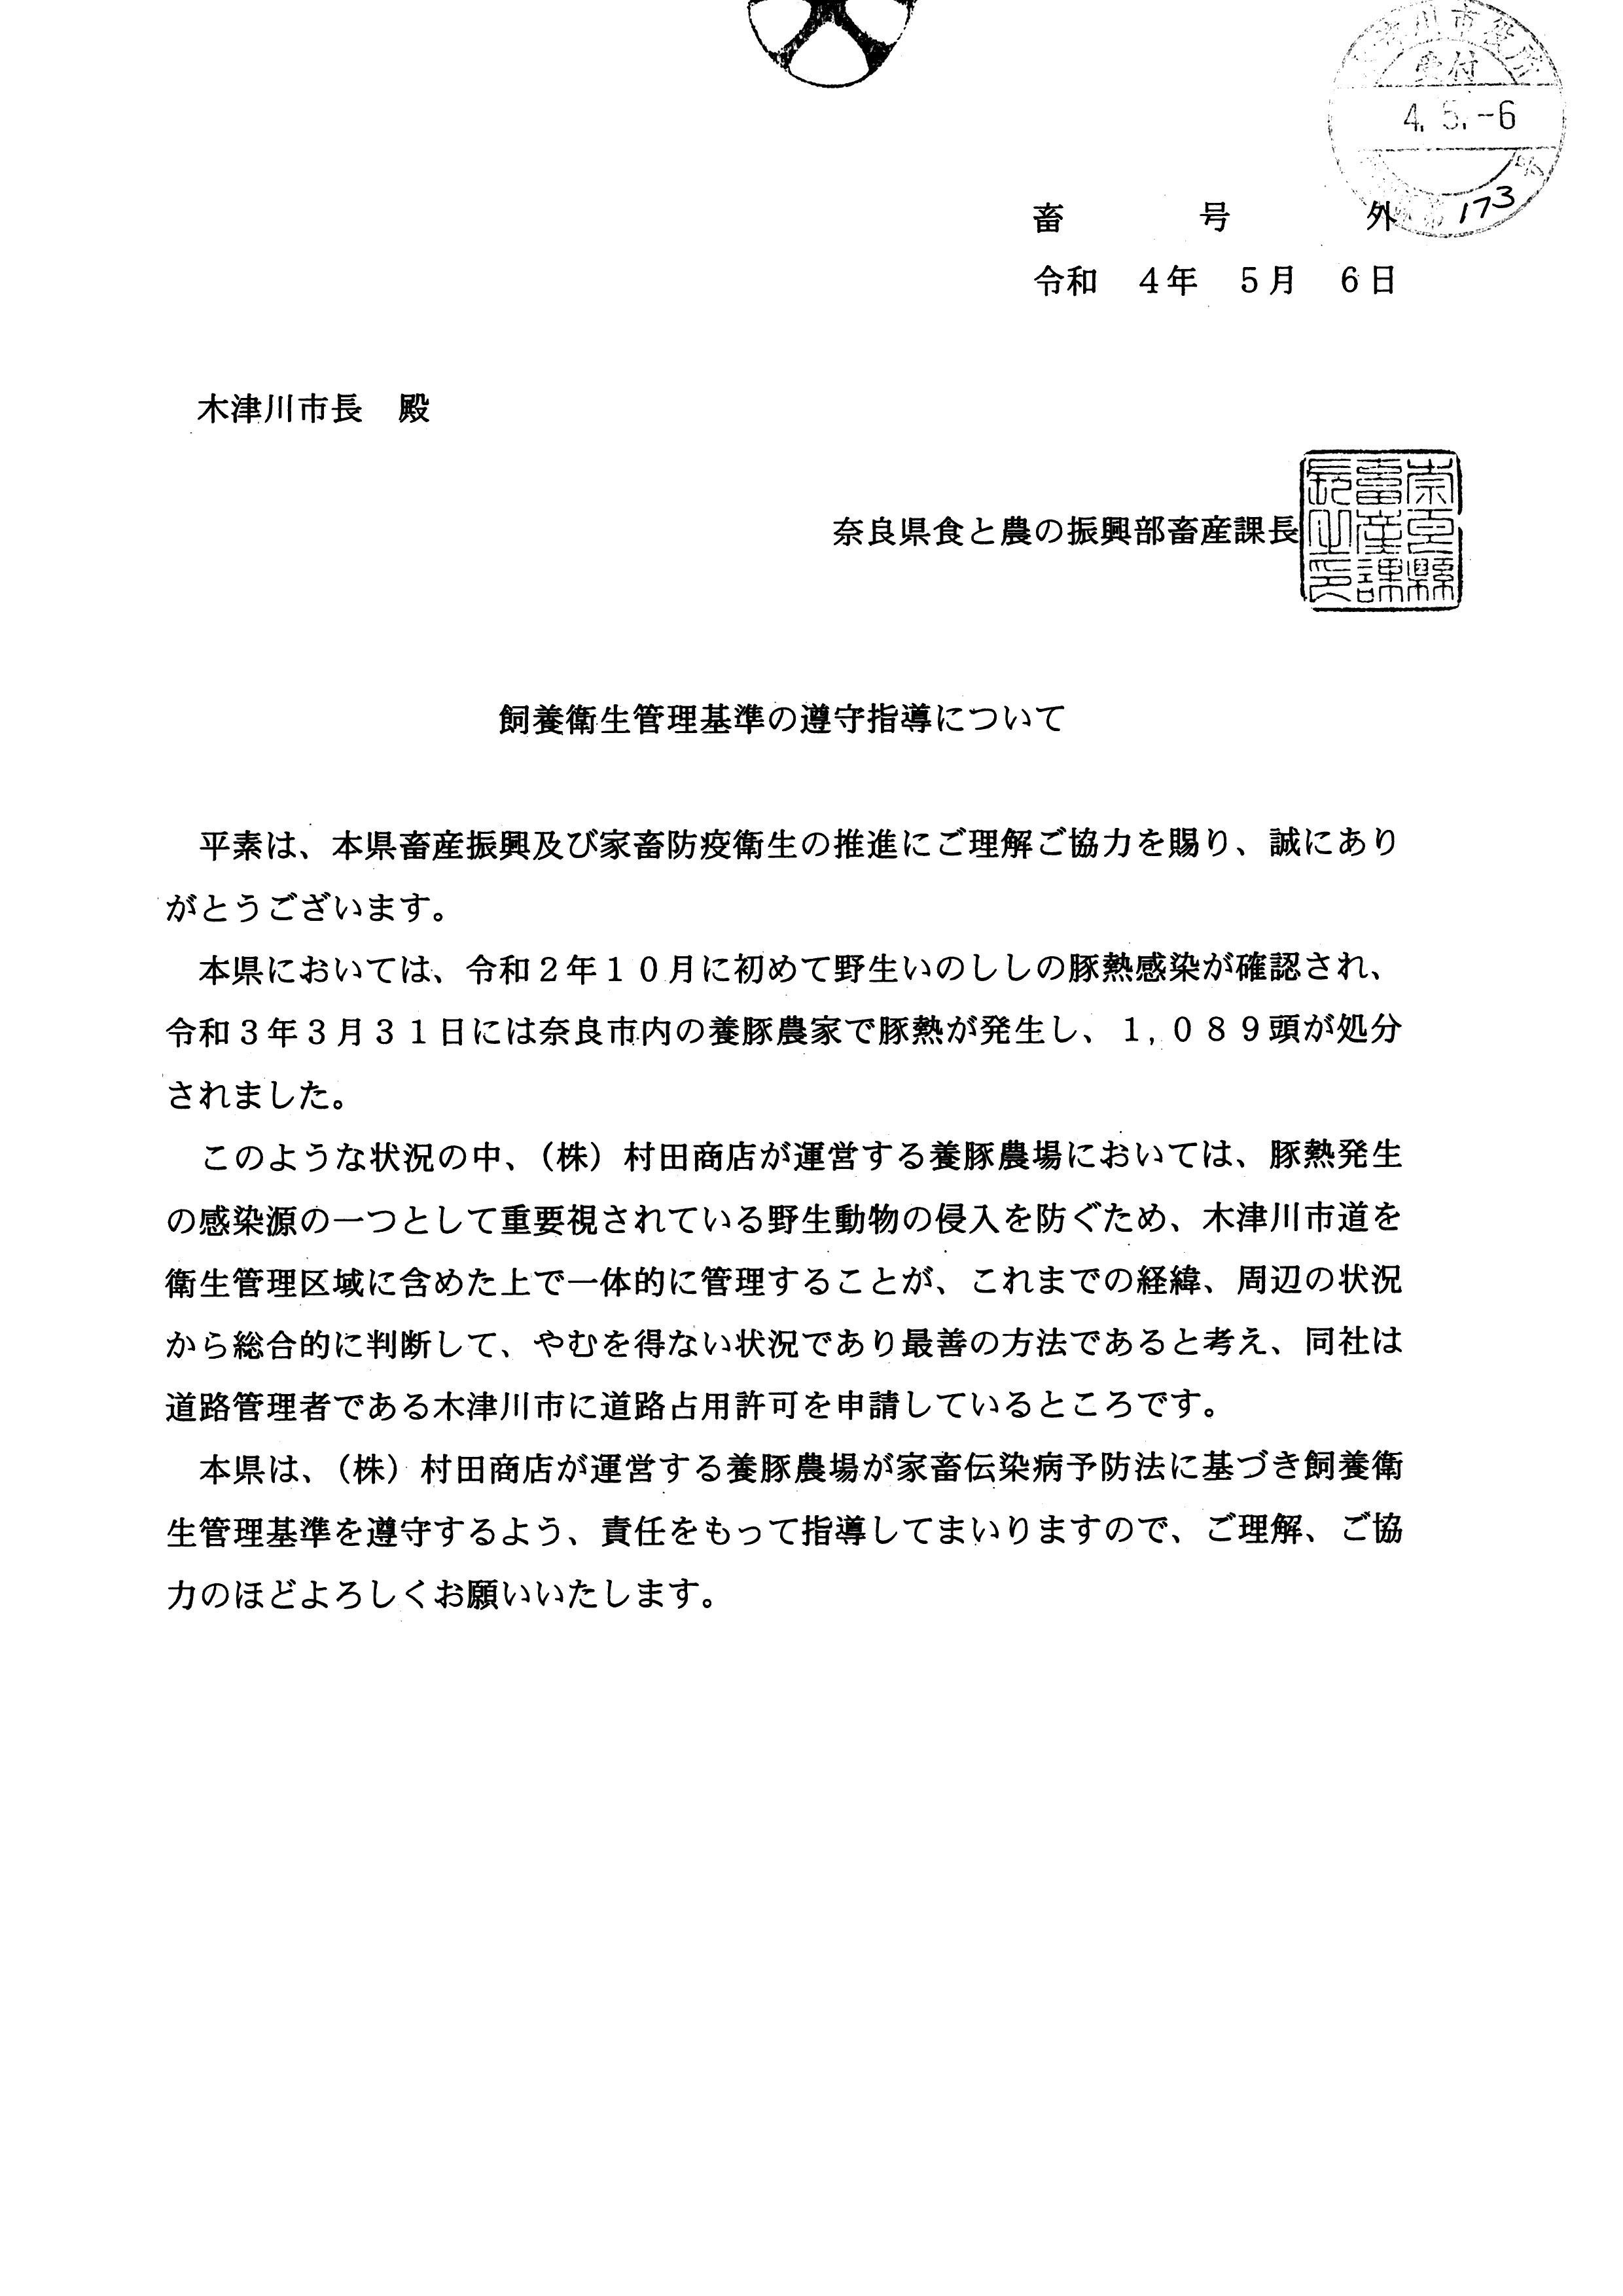 令和4年5月16日-道路占用の許可について（期間更新）奈良県食と農の振興部畜産課長　豚熱感染防止対策への協力について